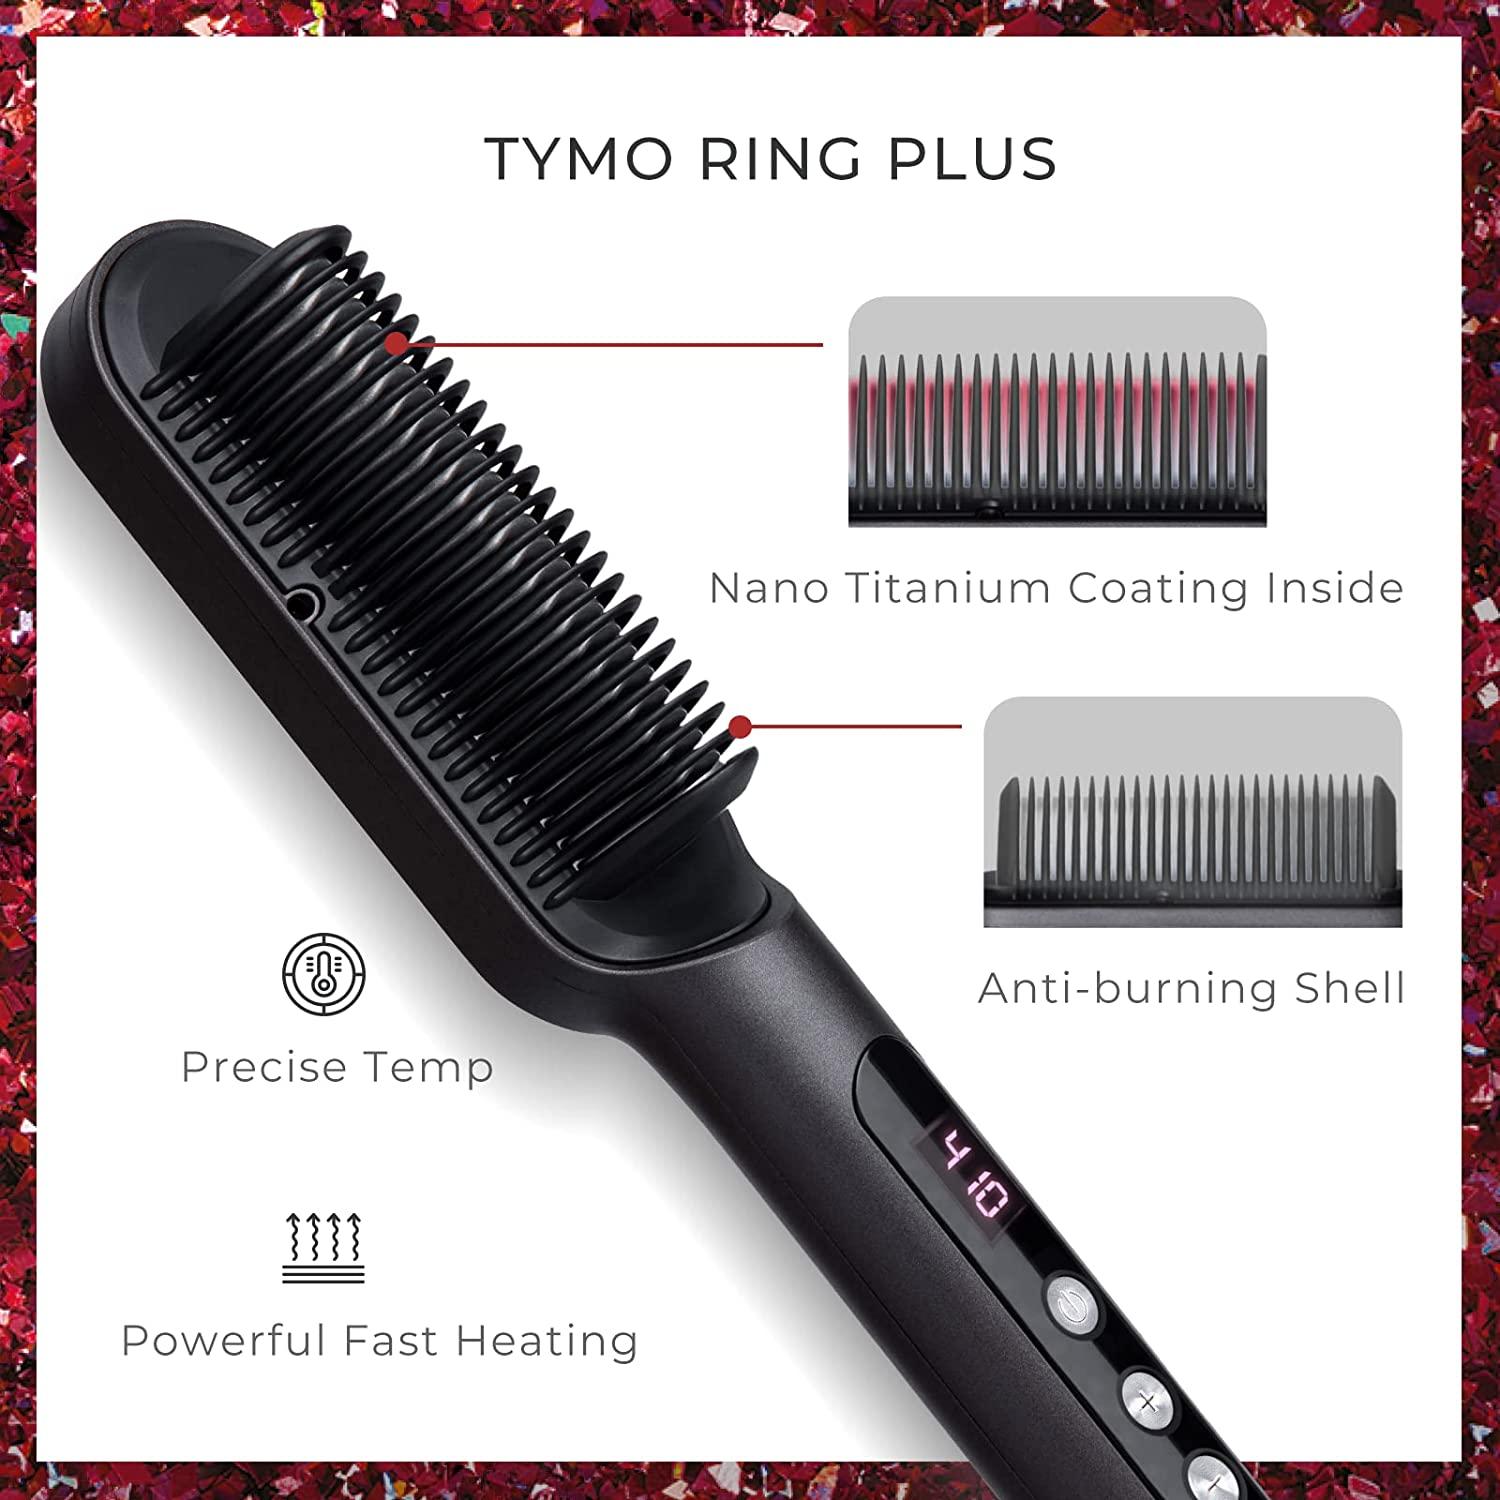 Straightening my natural hair using NEW TYMO RING PLUS 